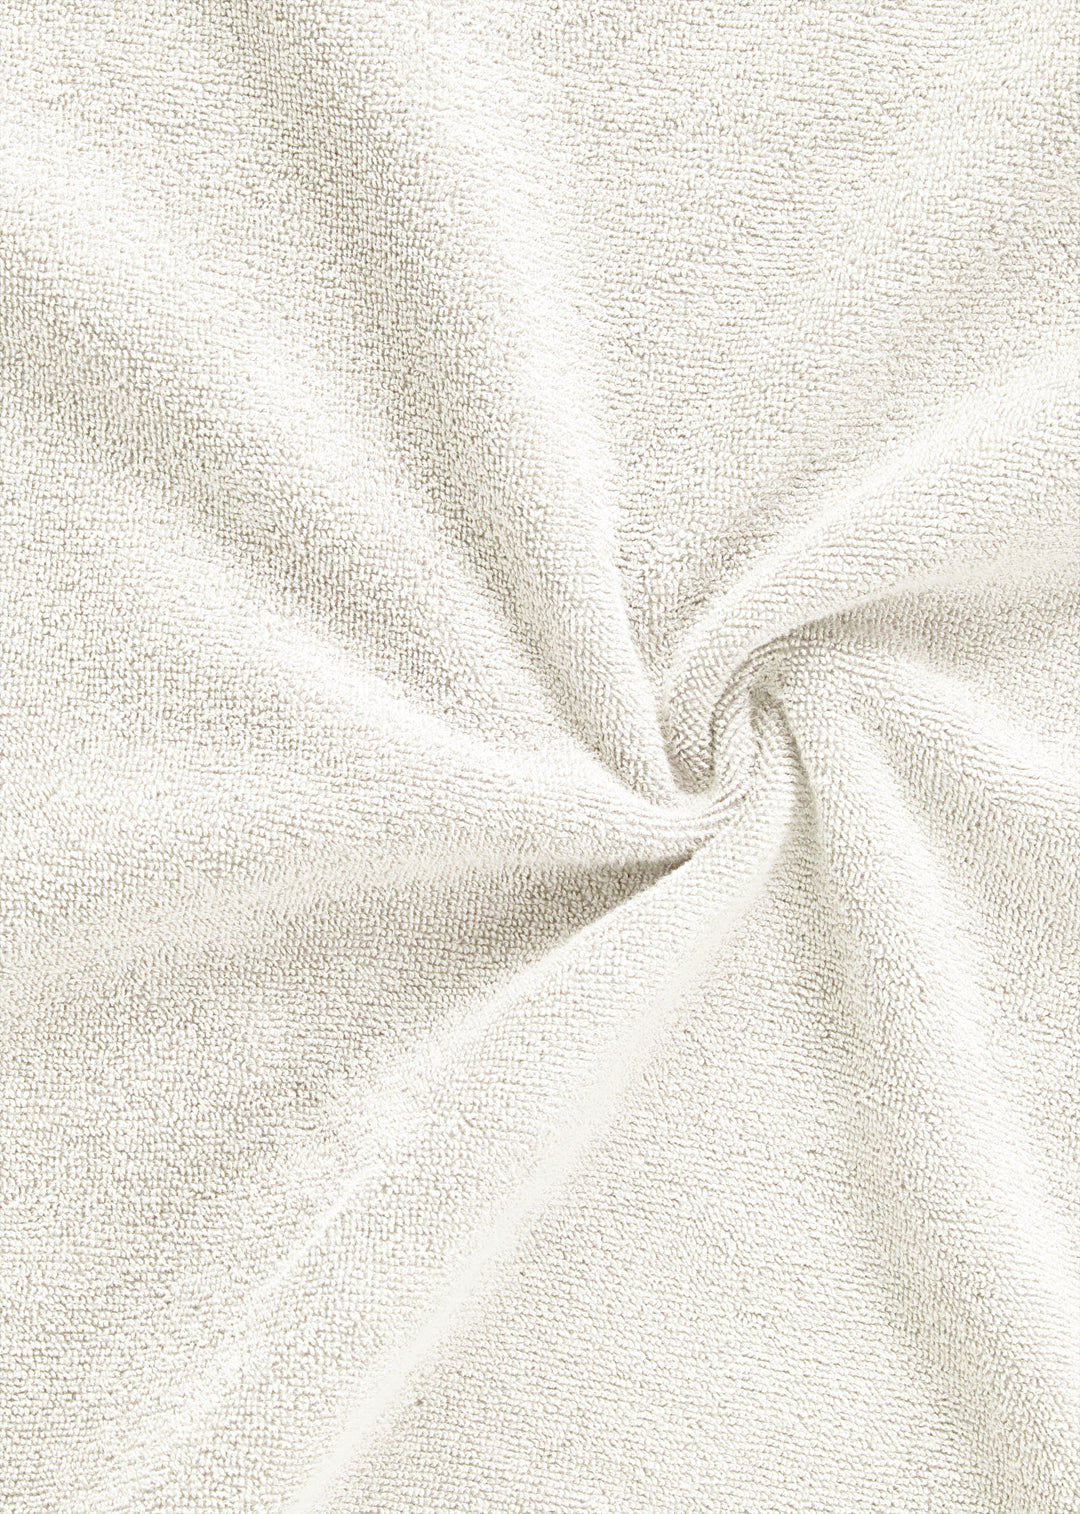 Handtuch Baumwolle Weiß 50 x 70 cm